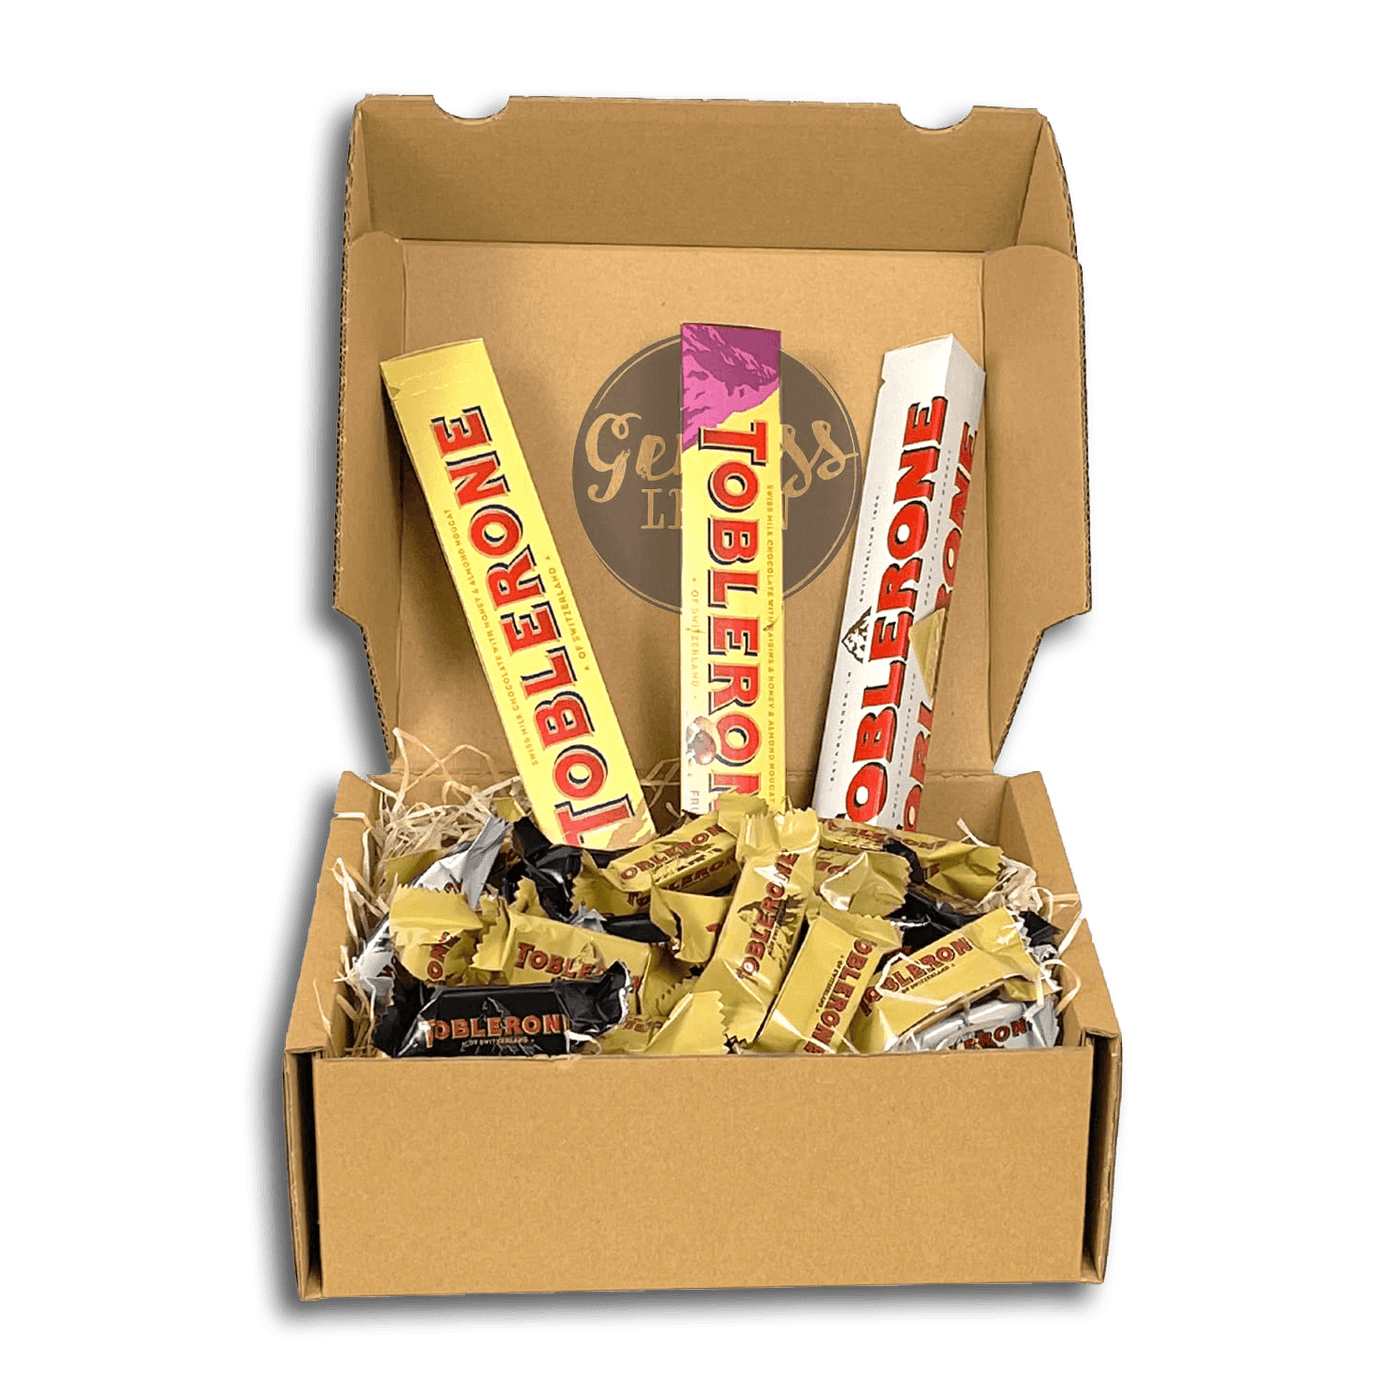 Genussleben Box mit 500g Toblerone - Genussleben